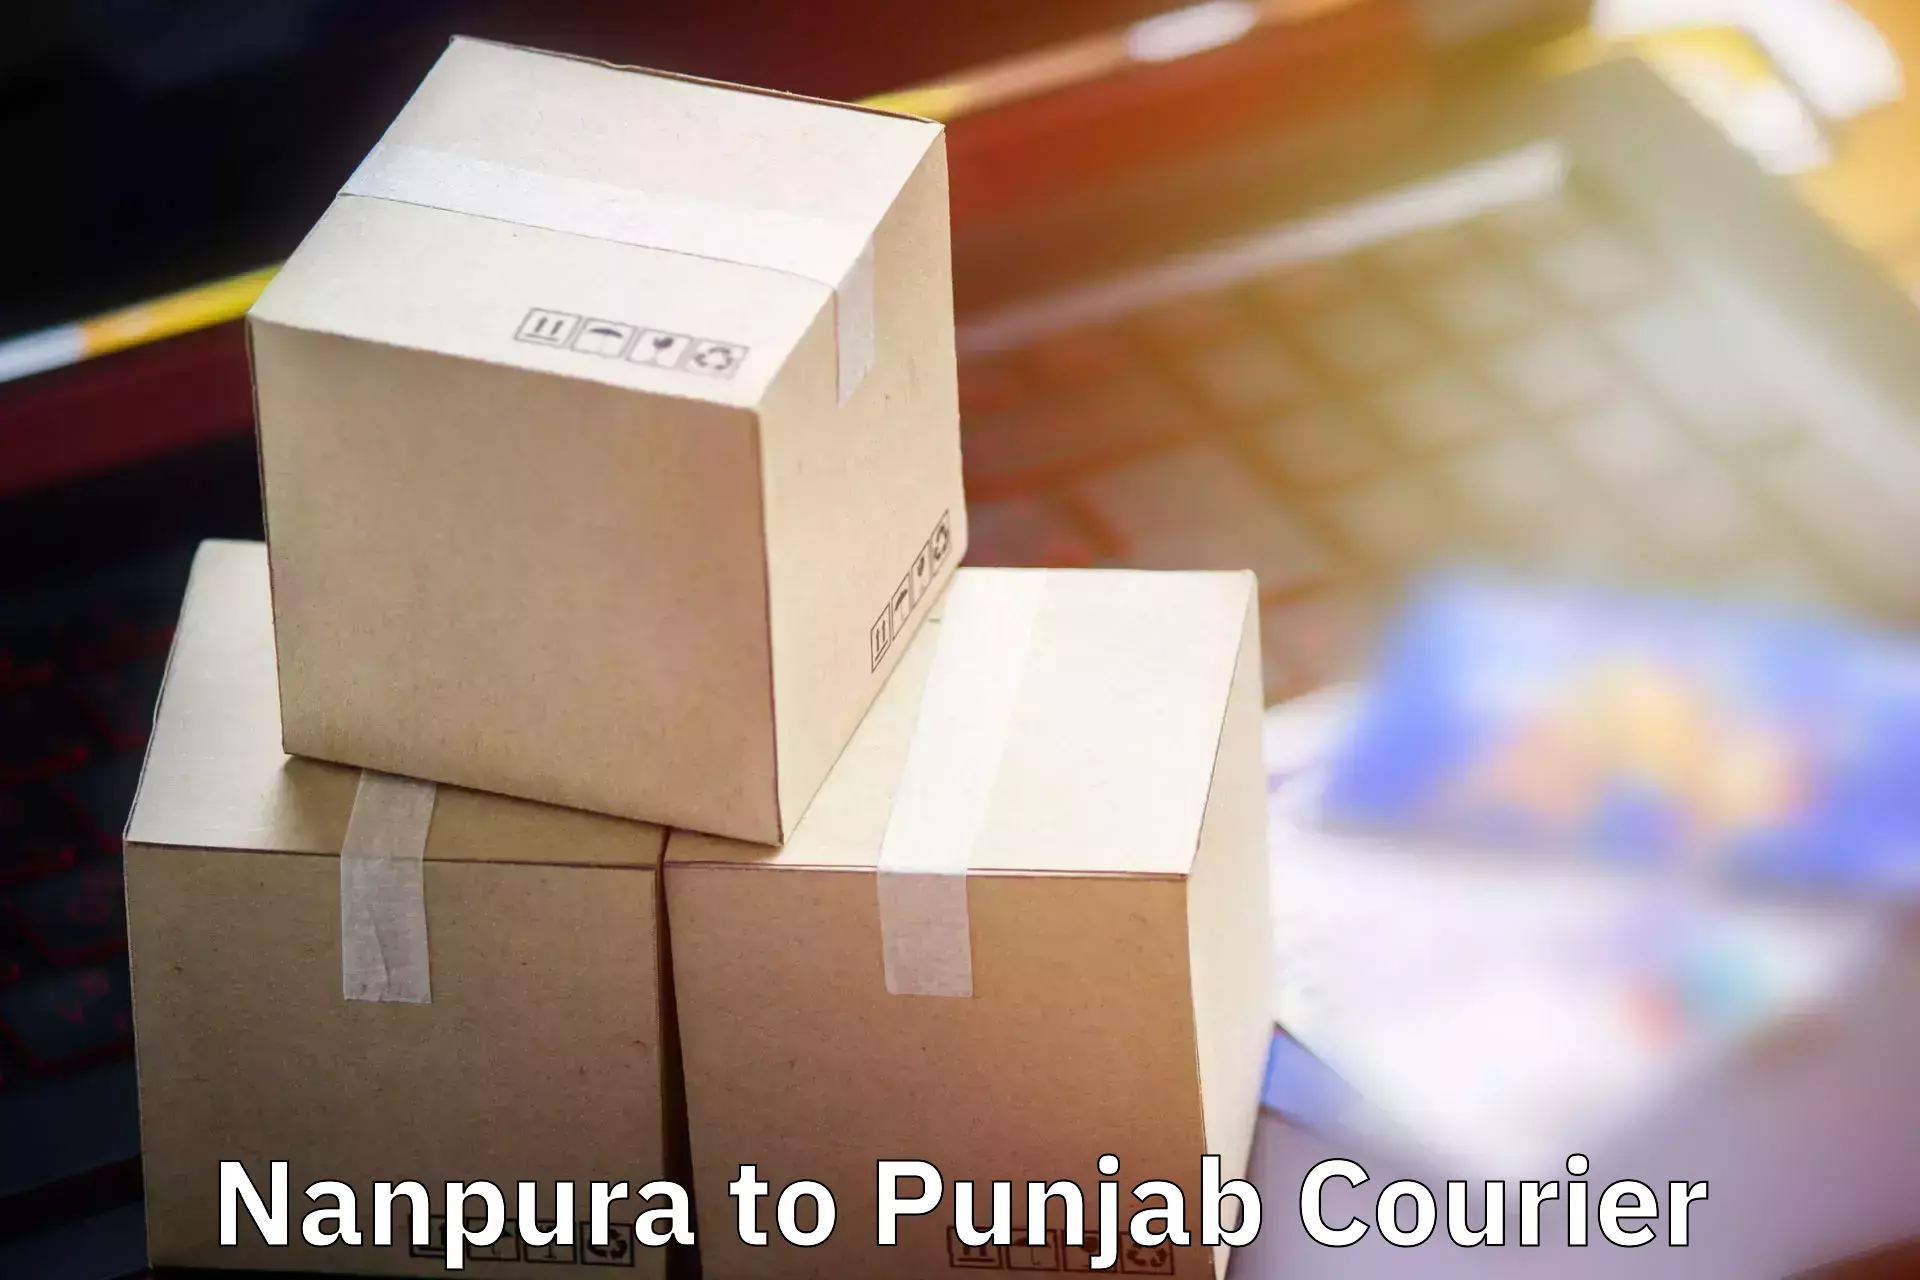 Digital baggage courier Nanpura to Punjab